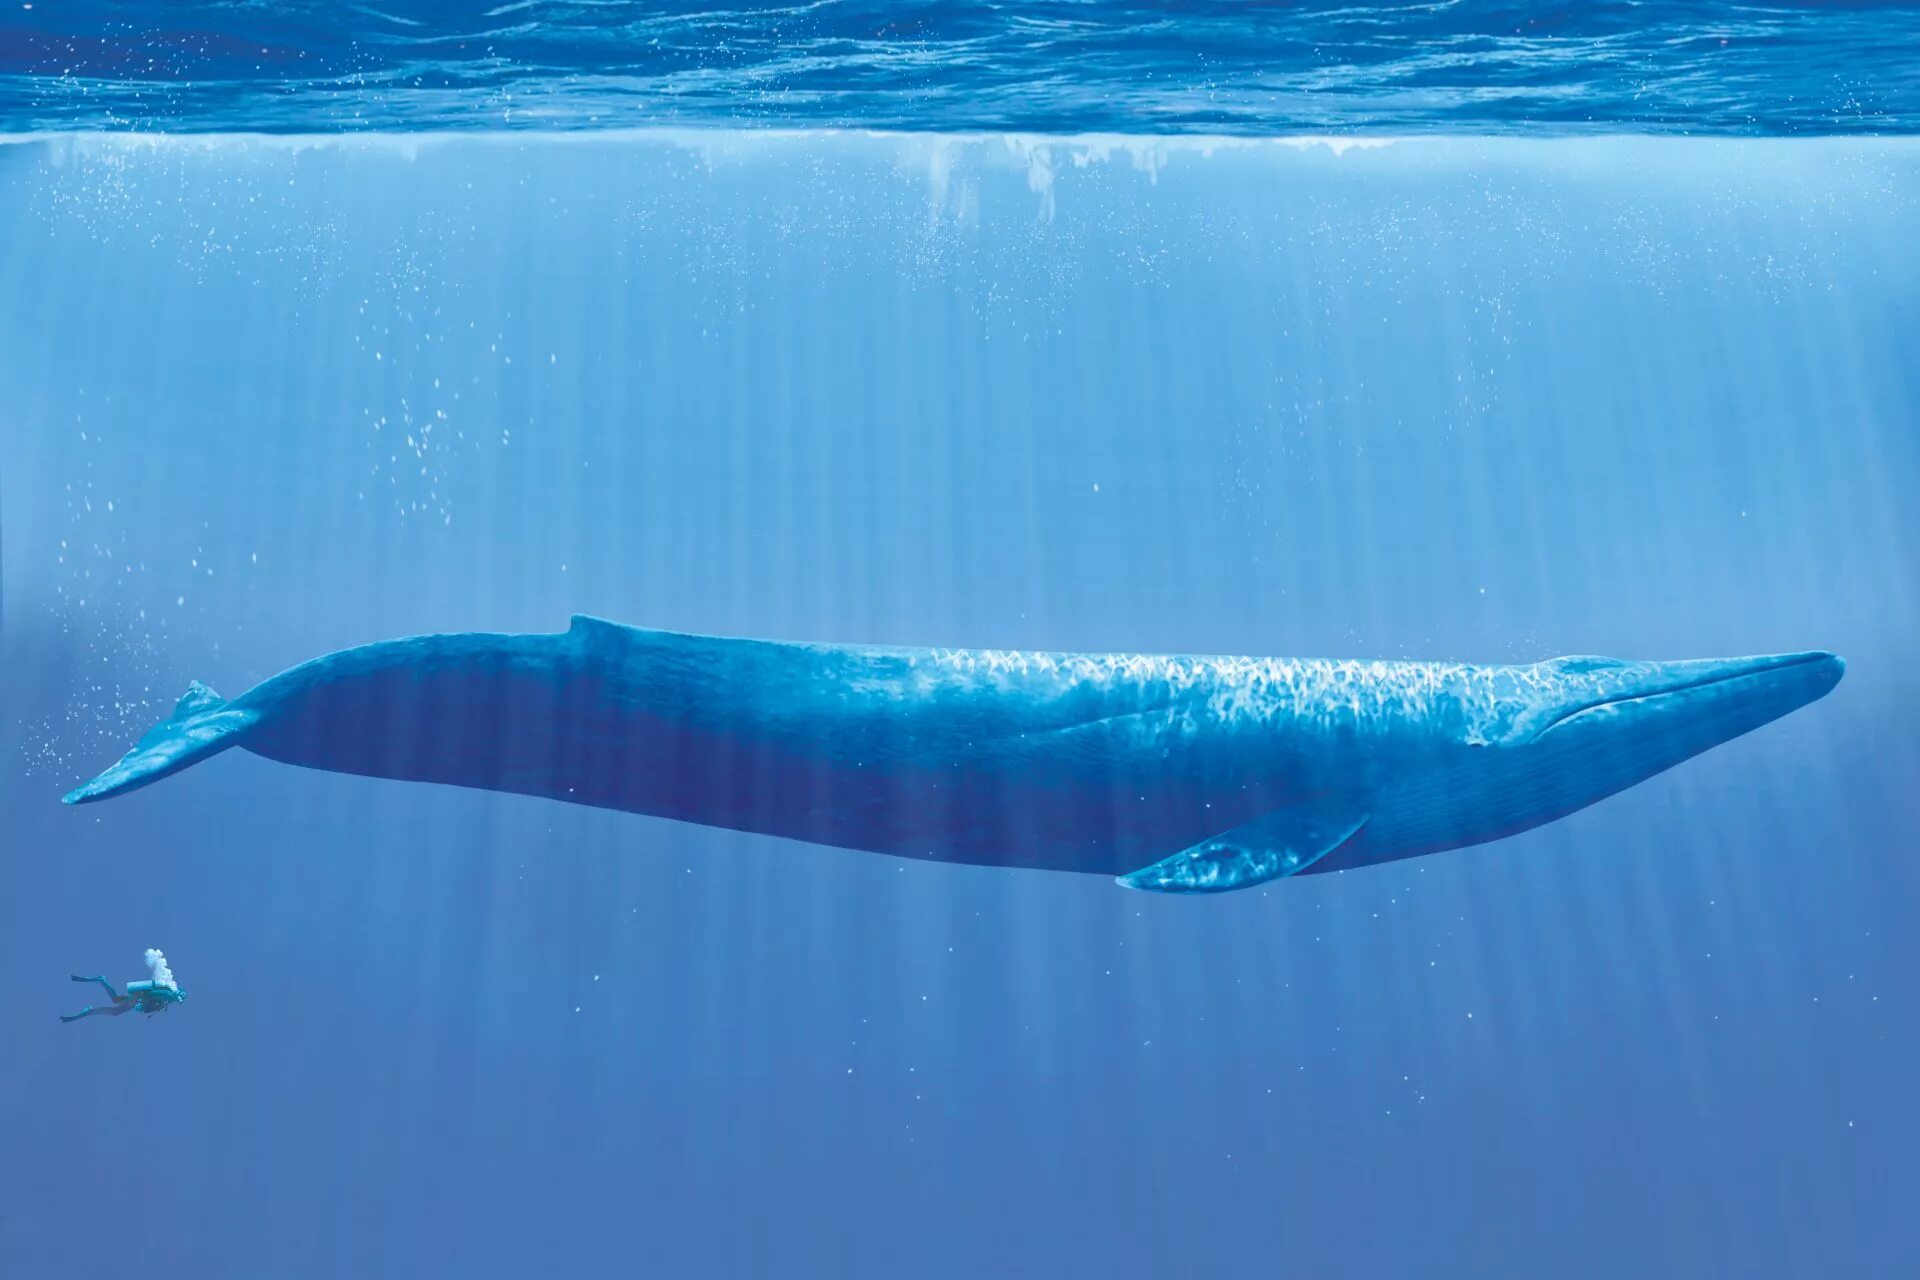 Синий размер. Синий кит (голубой кит). Синий кит блювал. Голубой кит блювал. Синий кит самый большой кит.